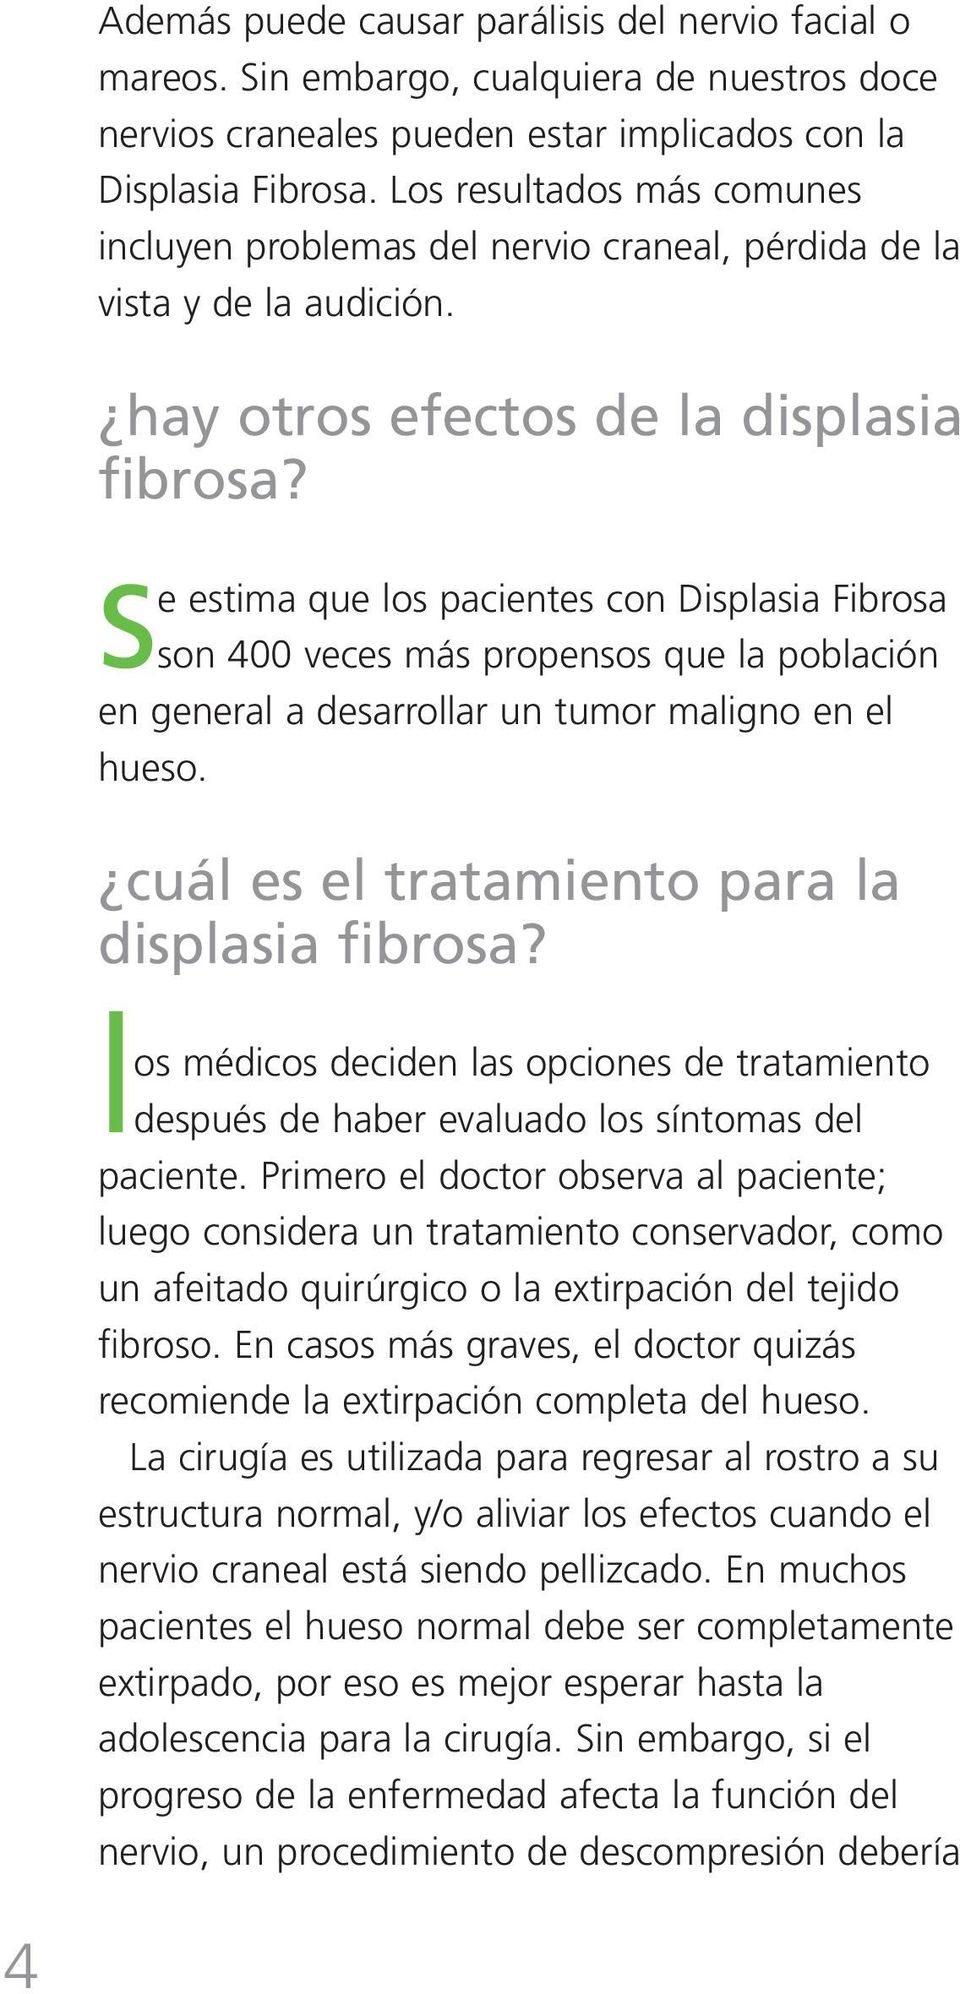 se estima que los pacientes con Displasia Fibrosa son 400 veces más propensos que la población en general a desarrollar un tumor maligno en el hueso. cuál es el tratamiento para la displasia fibrosa?